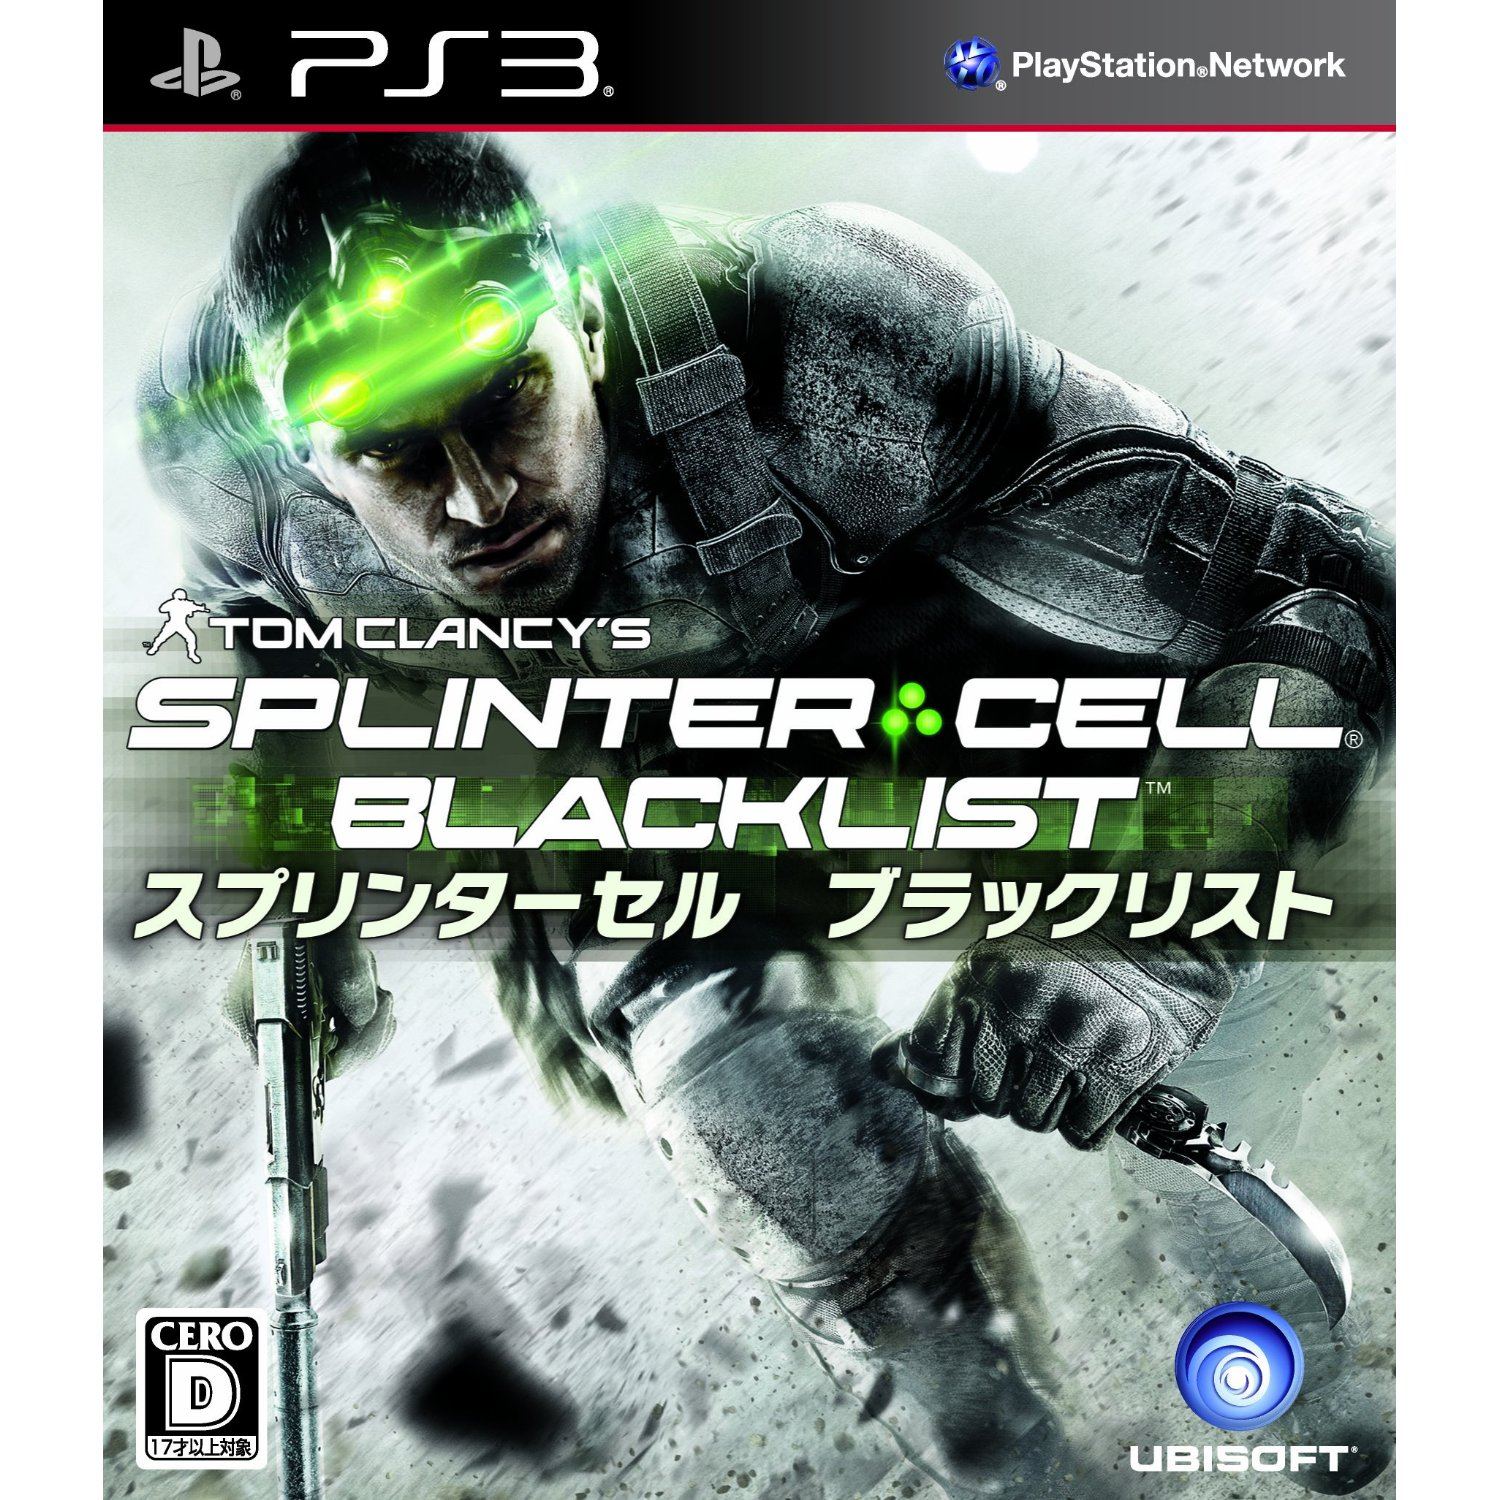 splinter cell – PlayStation.Blog